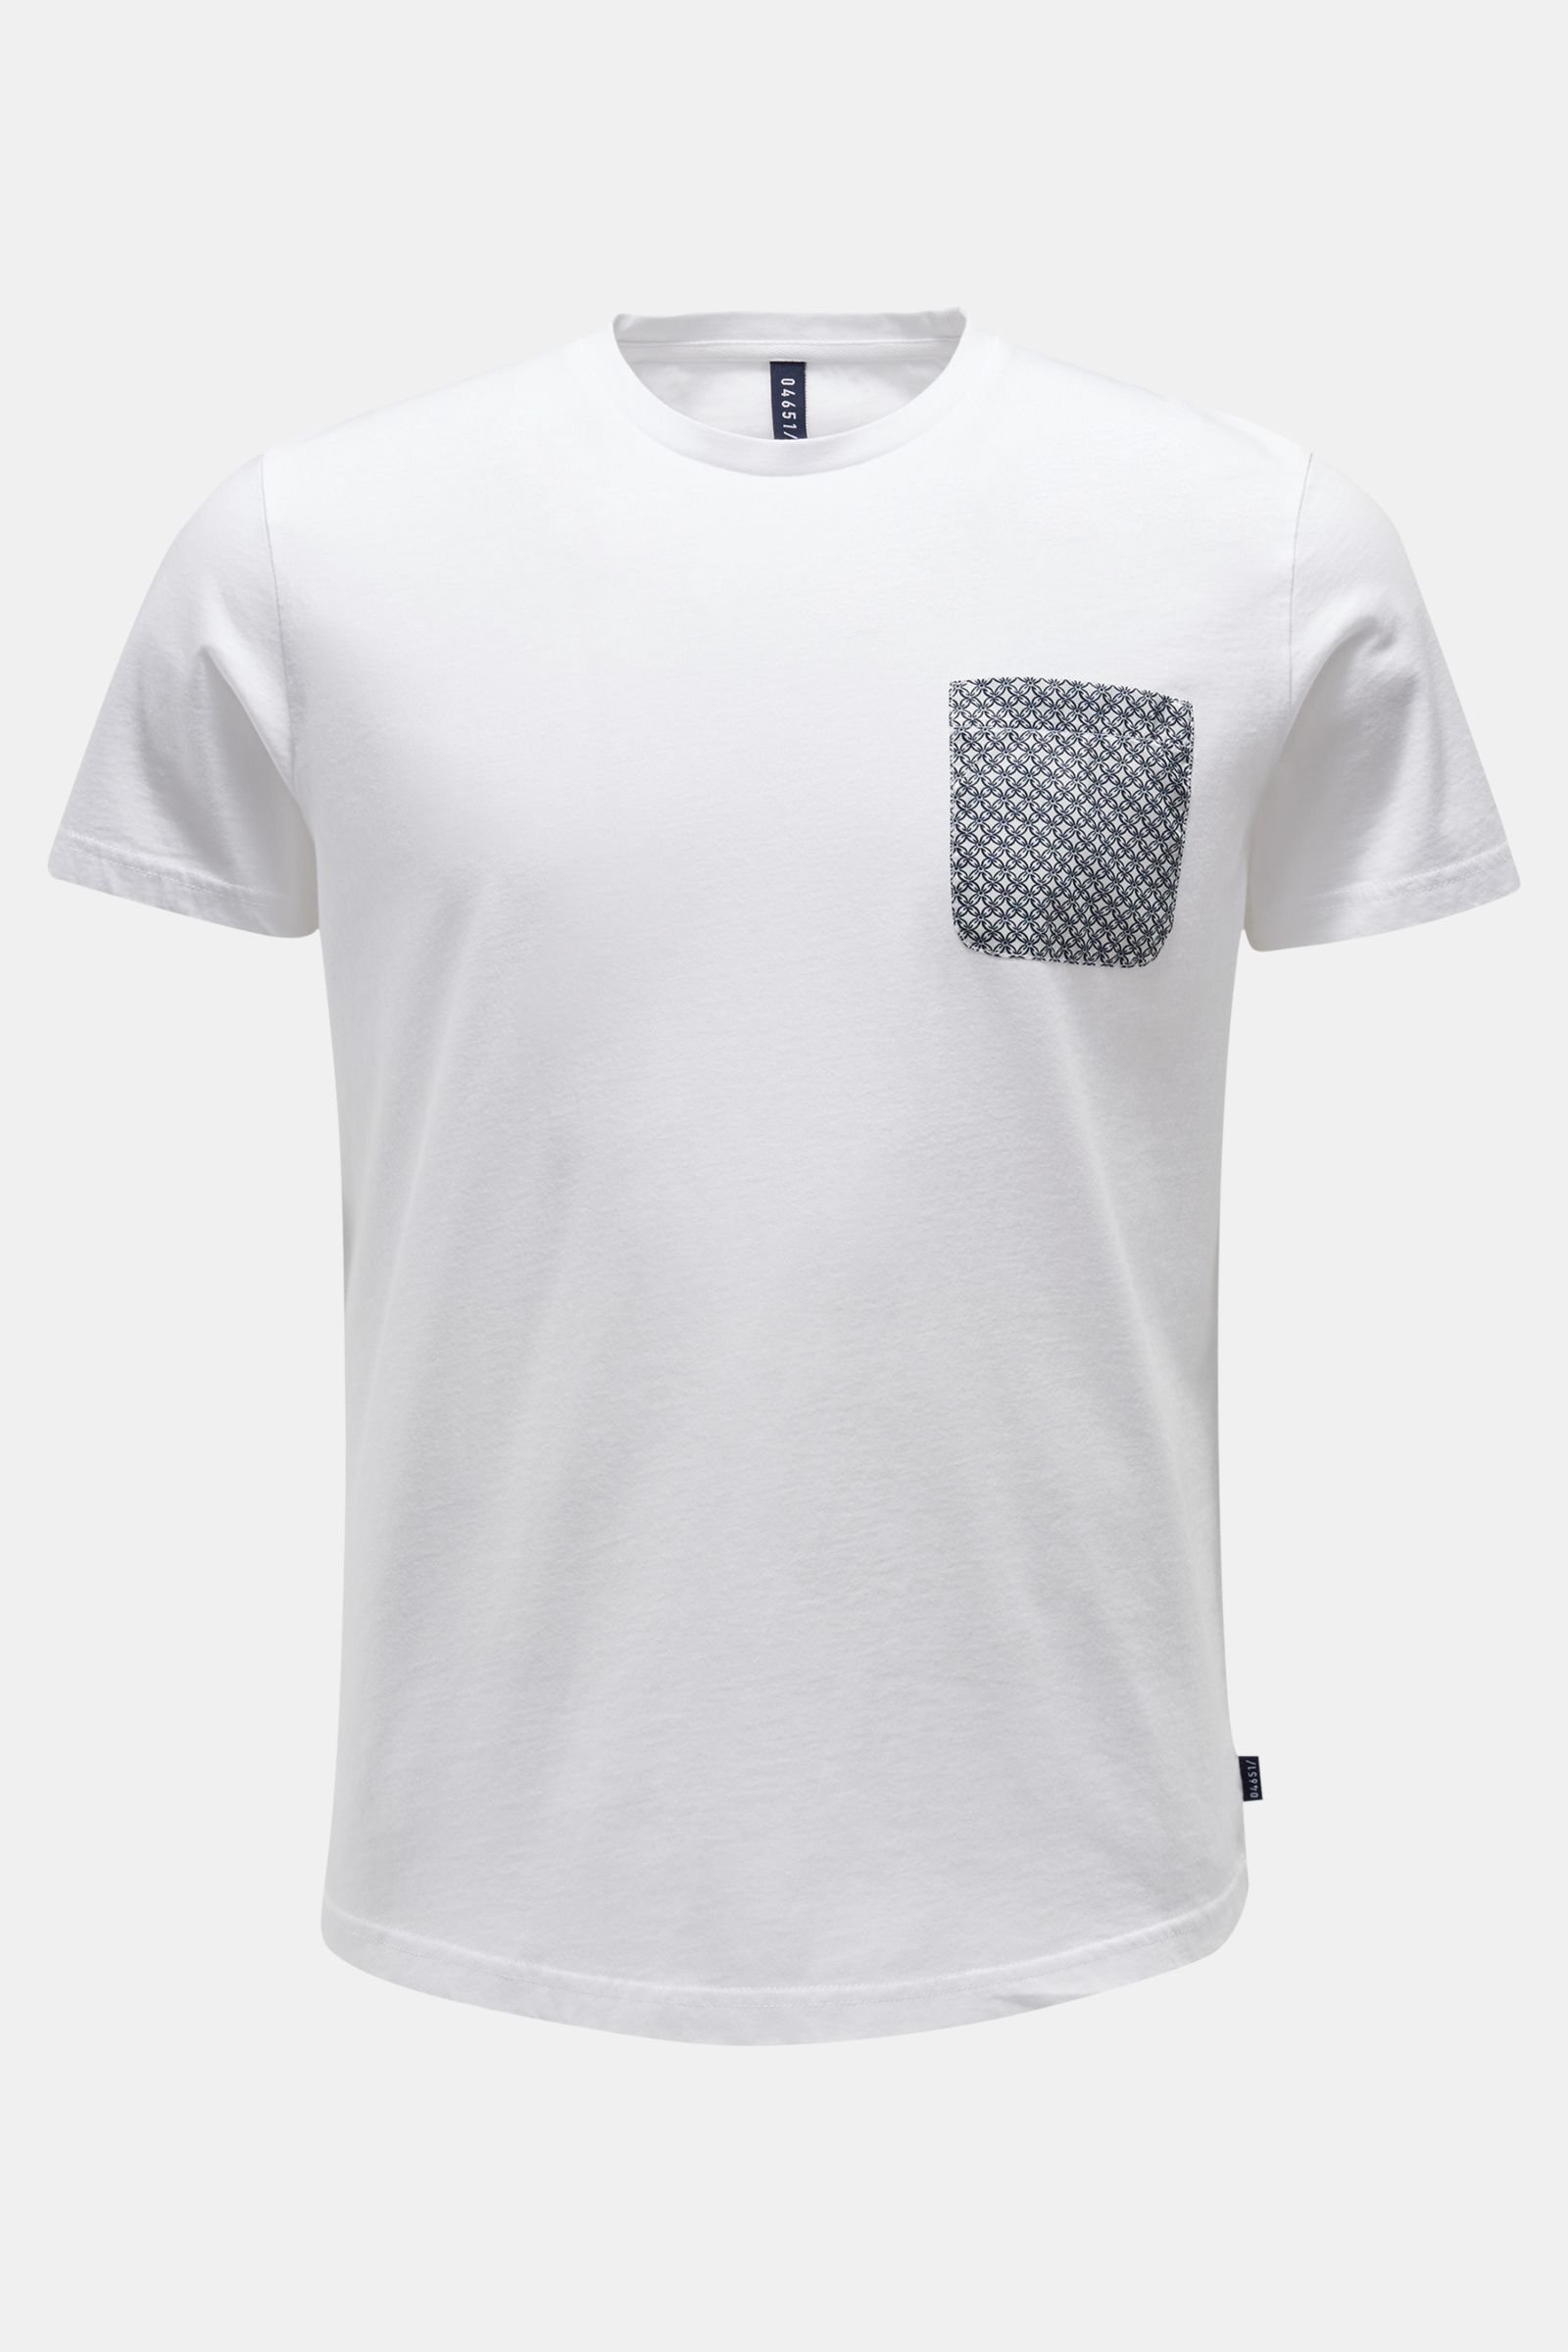 Rundhals-T-Shirt weiß 